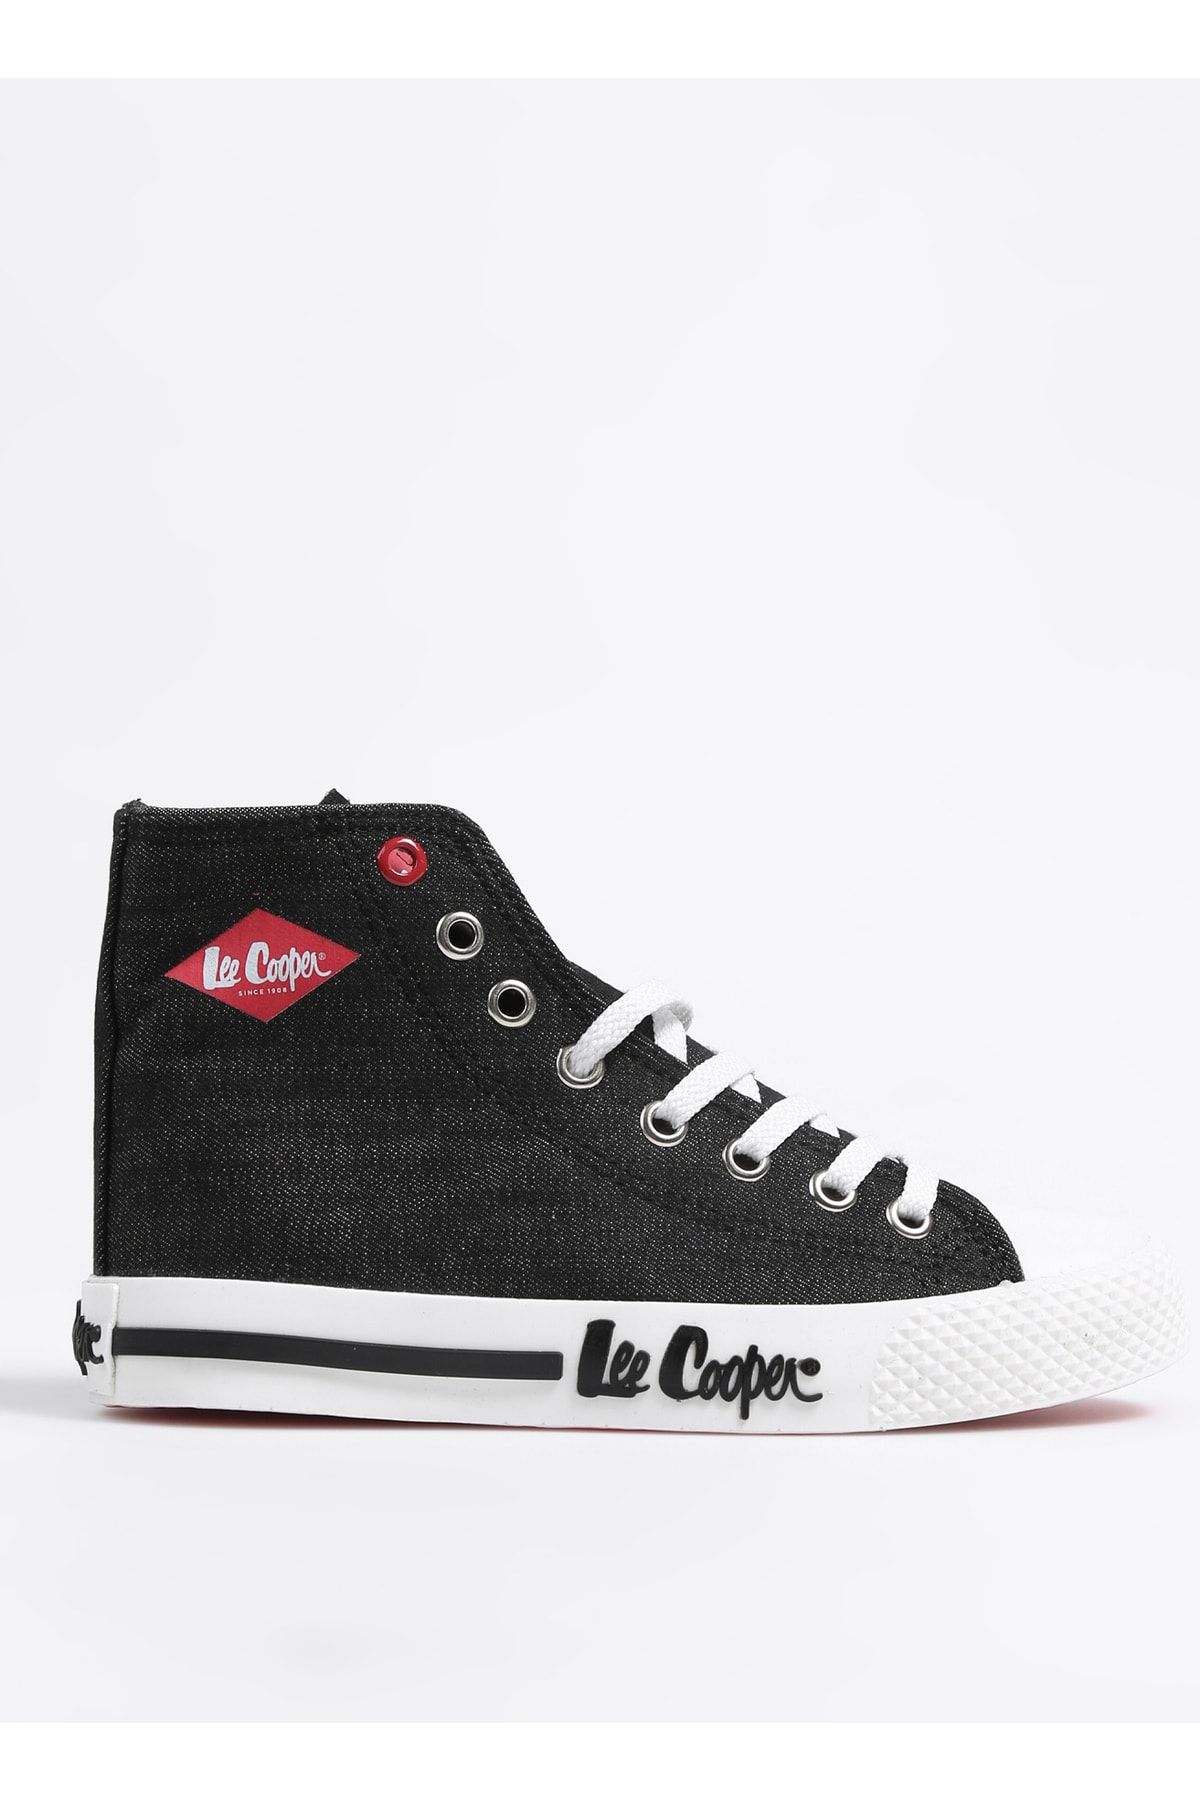 Lee Cooper Sneaker